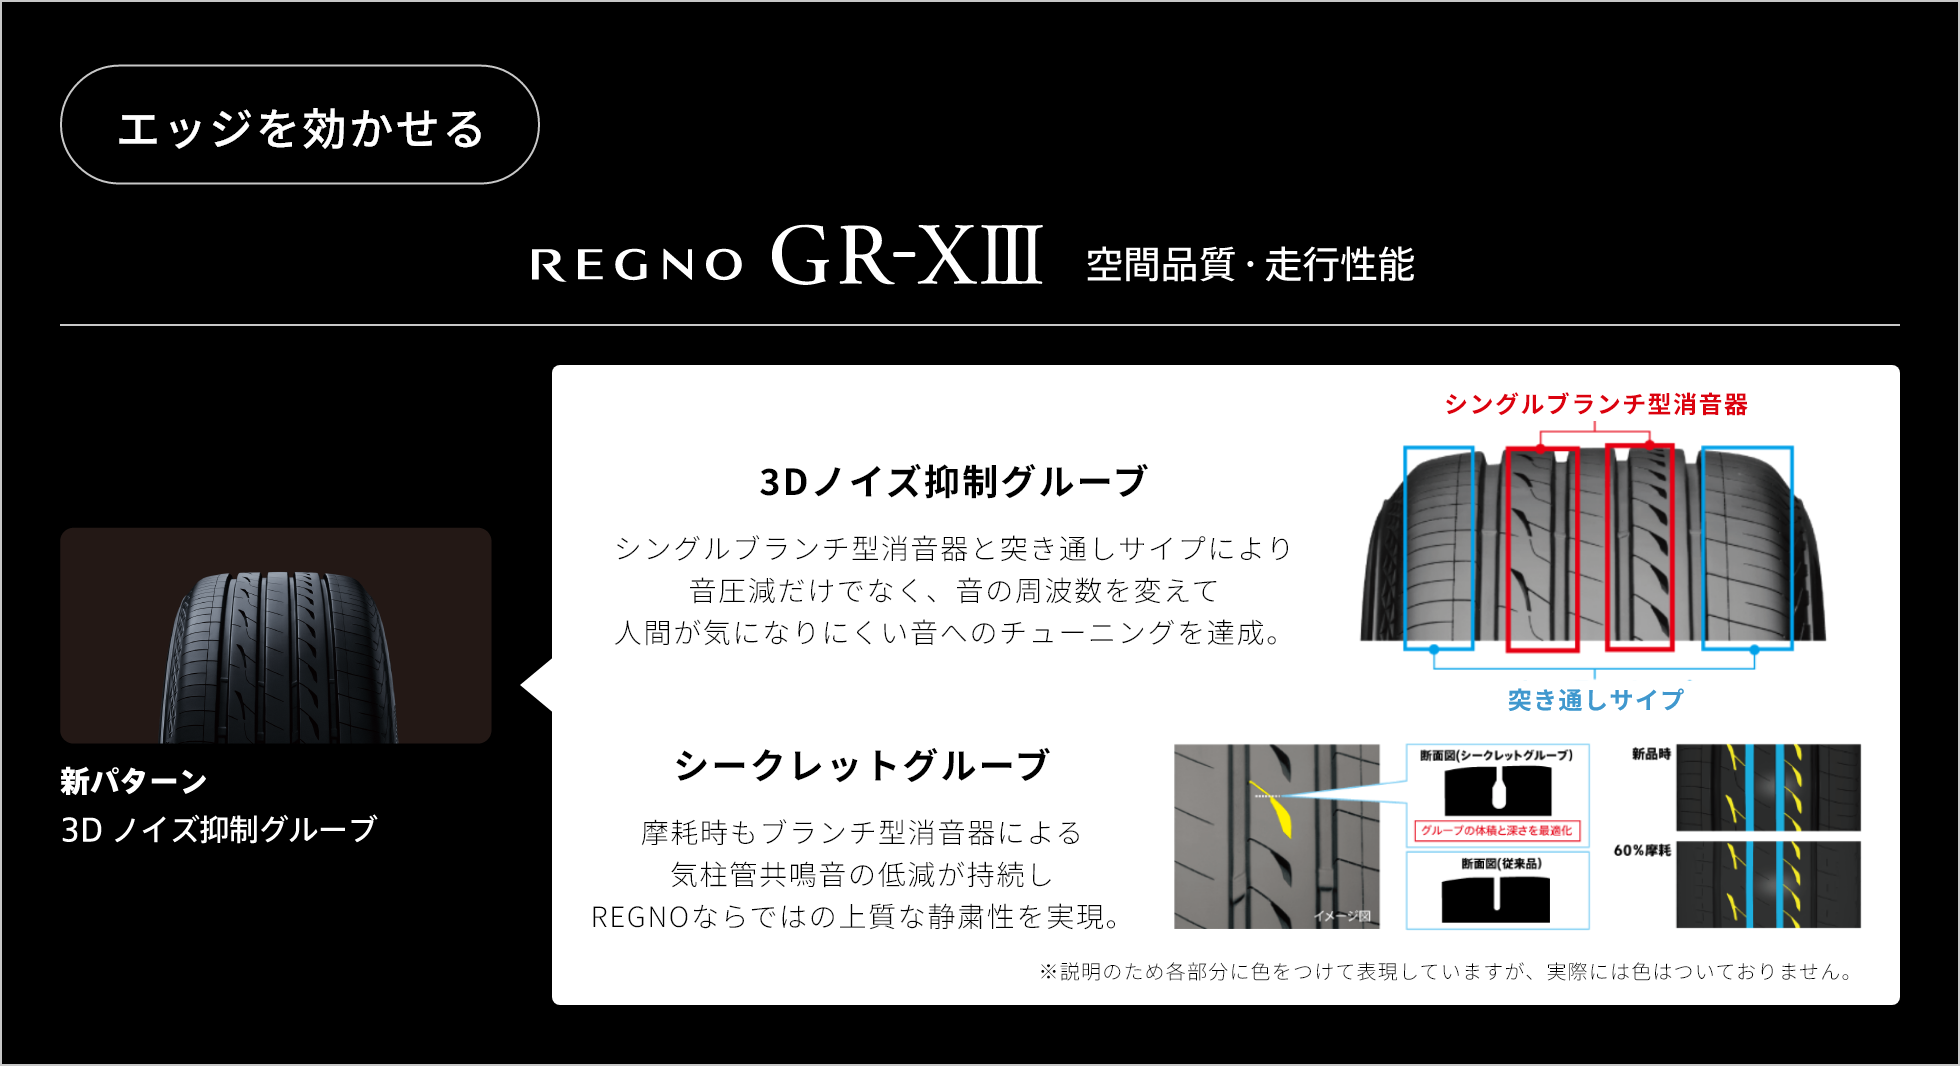 エッジを効かせる　REGNO GR-ⅩⅢ 空間品質・走行性能　新パターン 3D ノイズ抑制グルーブ。